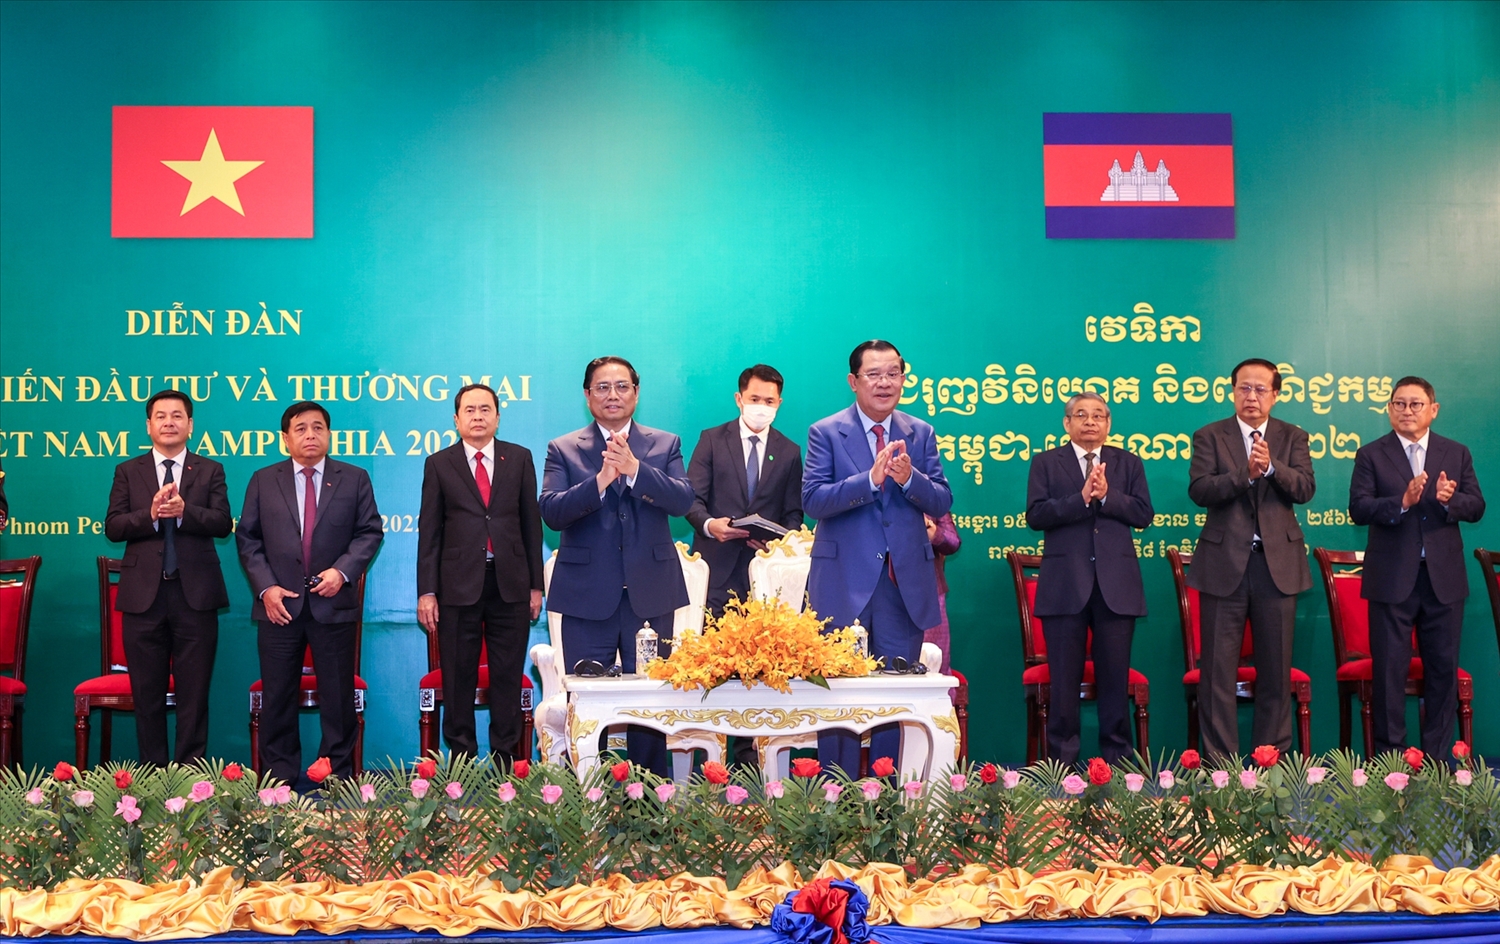 Diễn đàn do Bộ Kế hoạch và Đầu tư và Bộ Công Thương Việt Nam phối hợp với Hội đồng Phát triển và Bộ Thương mại Campuchia tổ chức - Ảnh: VGP/Nhật Bắc